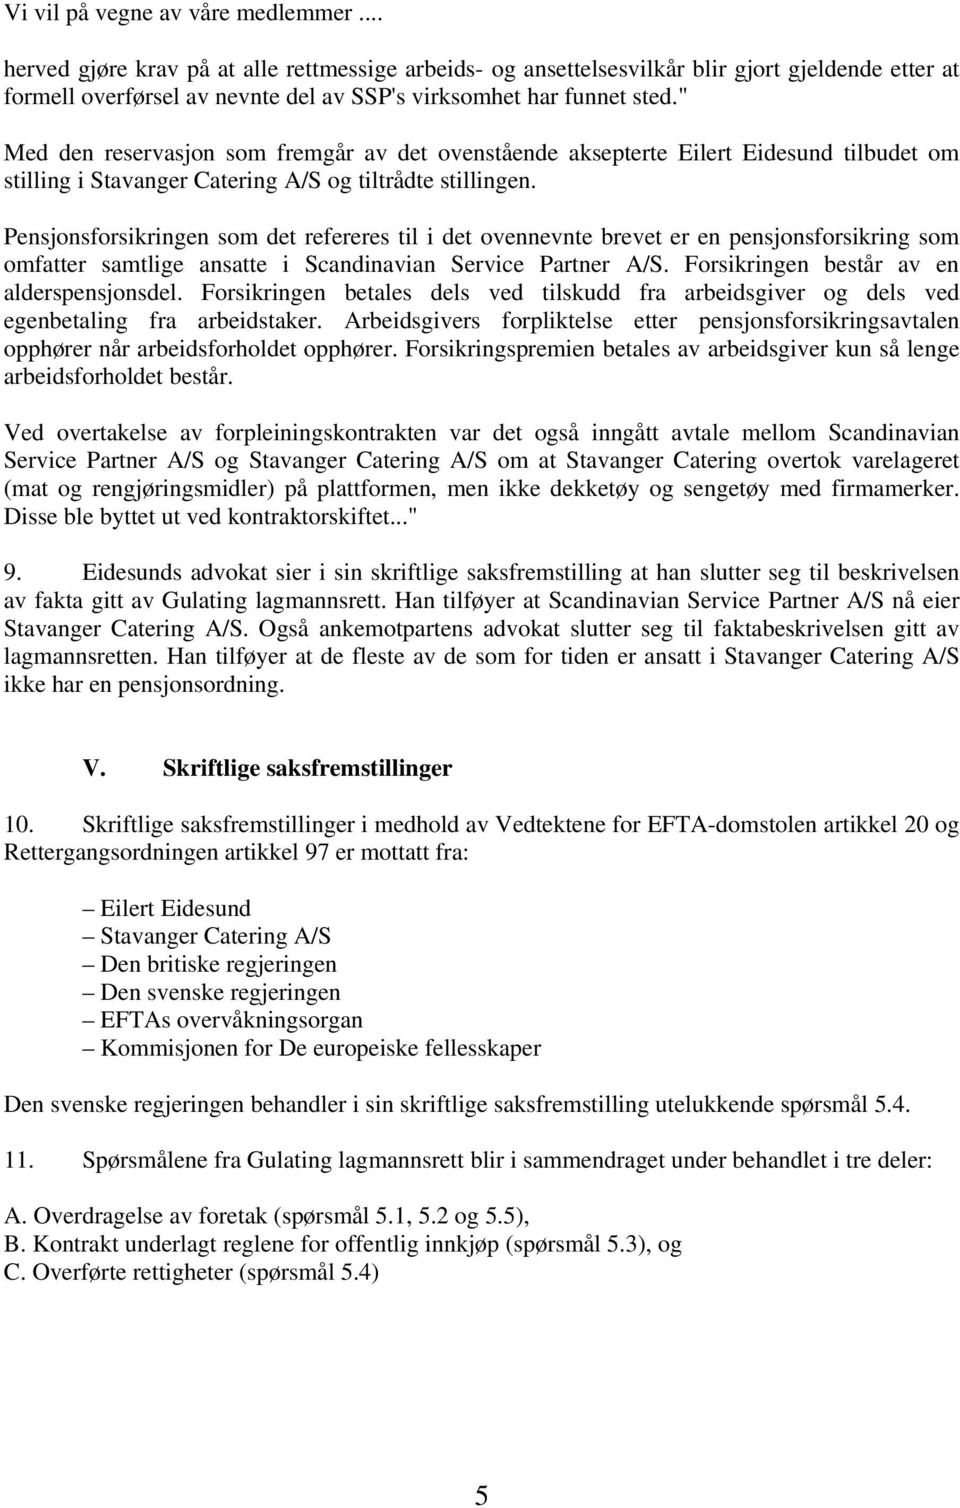 " Med den reservasjon som fremgår av det ovenstående aksepterte Eilert Eidesund tilbudet om stilling i Stavanger Catering A/S og tiltrådte stillingen.